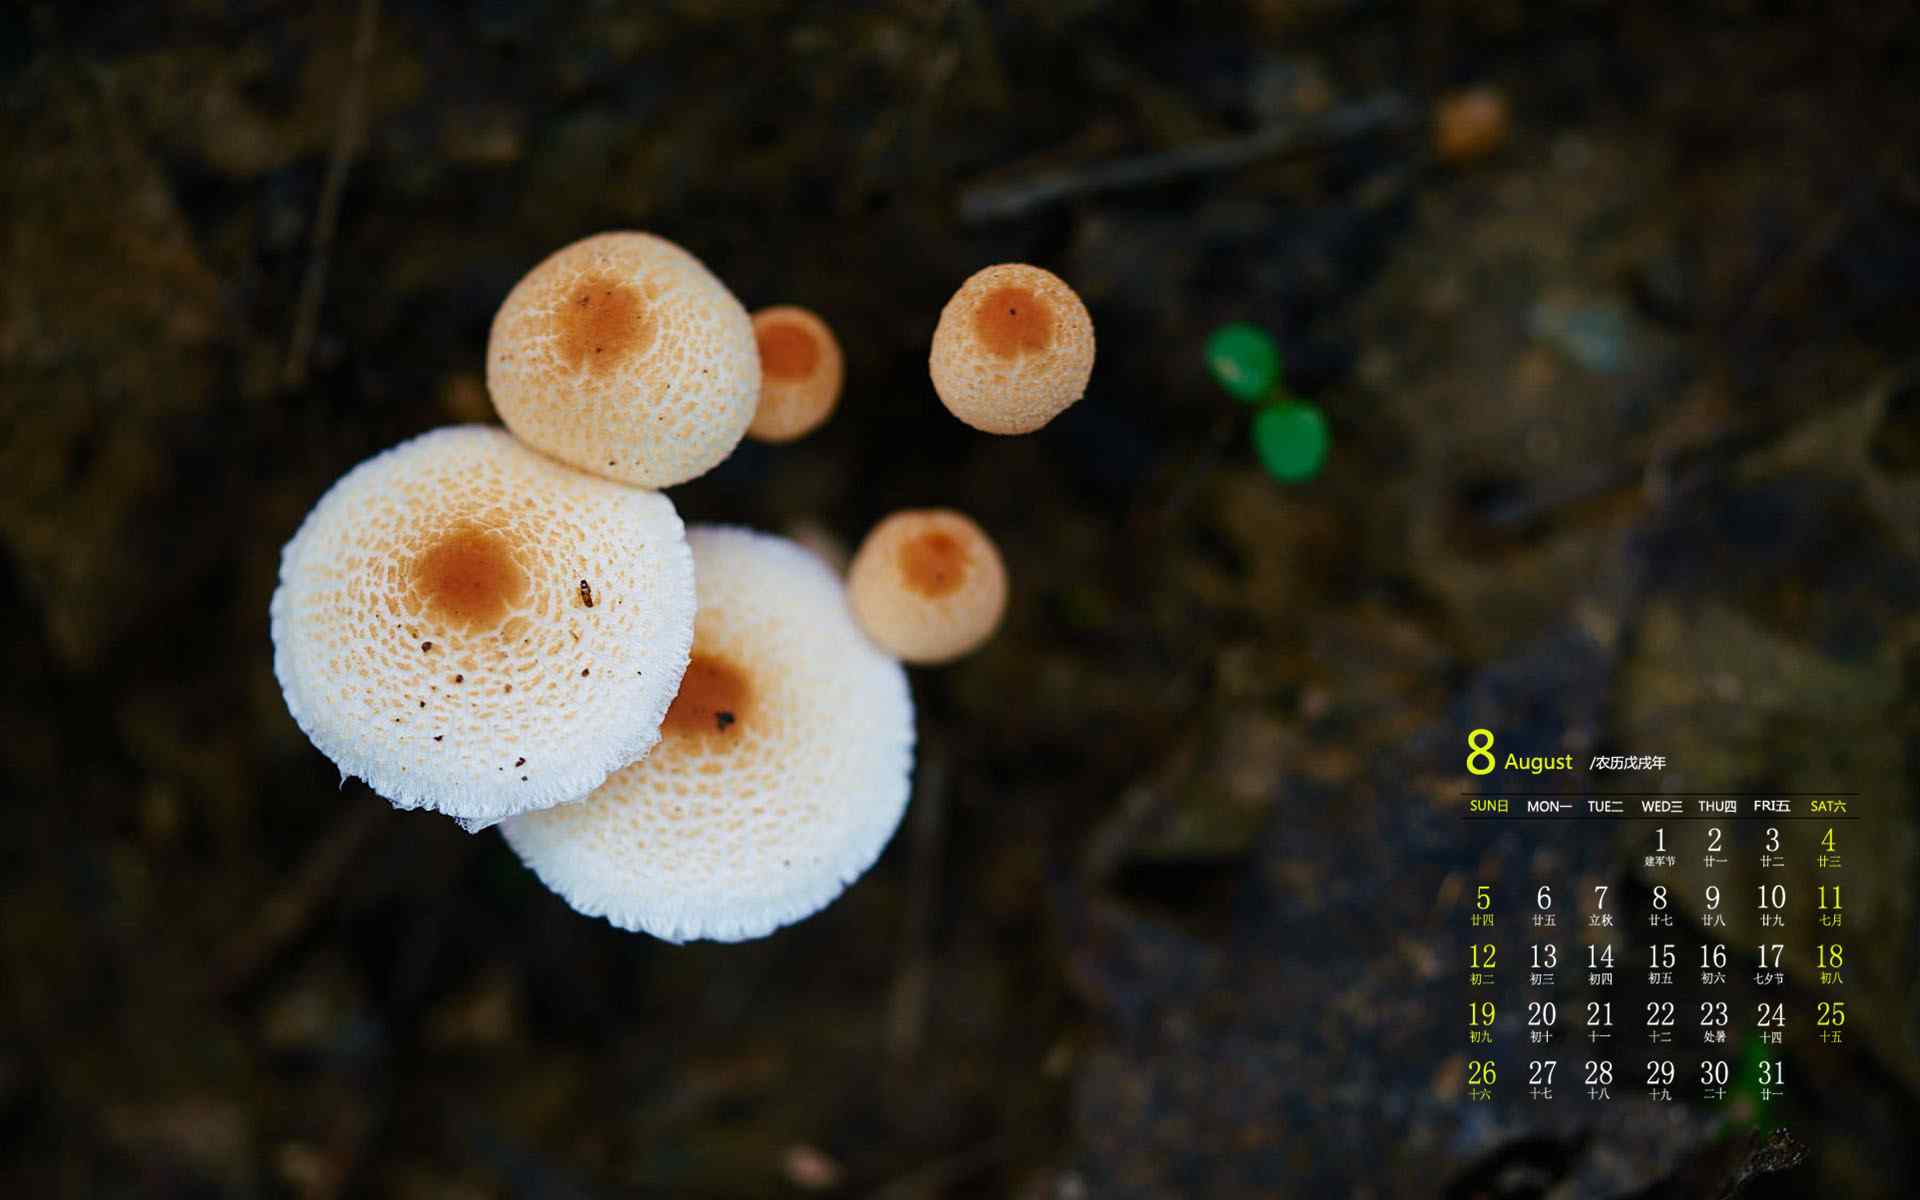 2018年8月日历壁纸可爱蘑菇摄影高清护眼壁纸